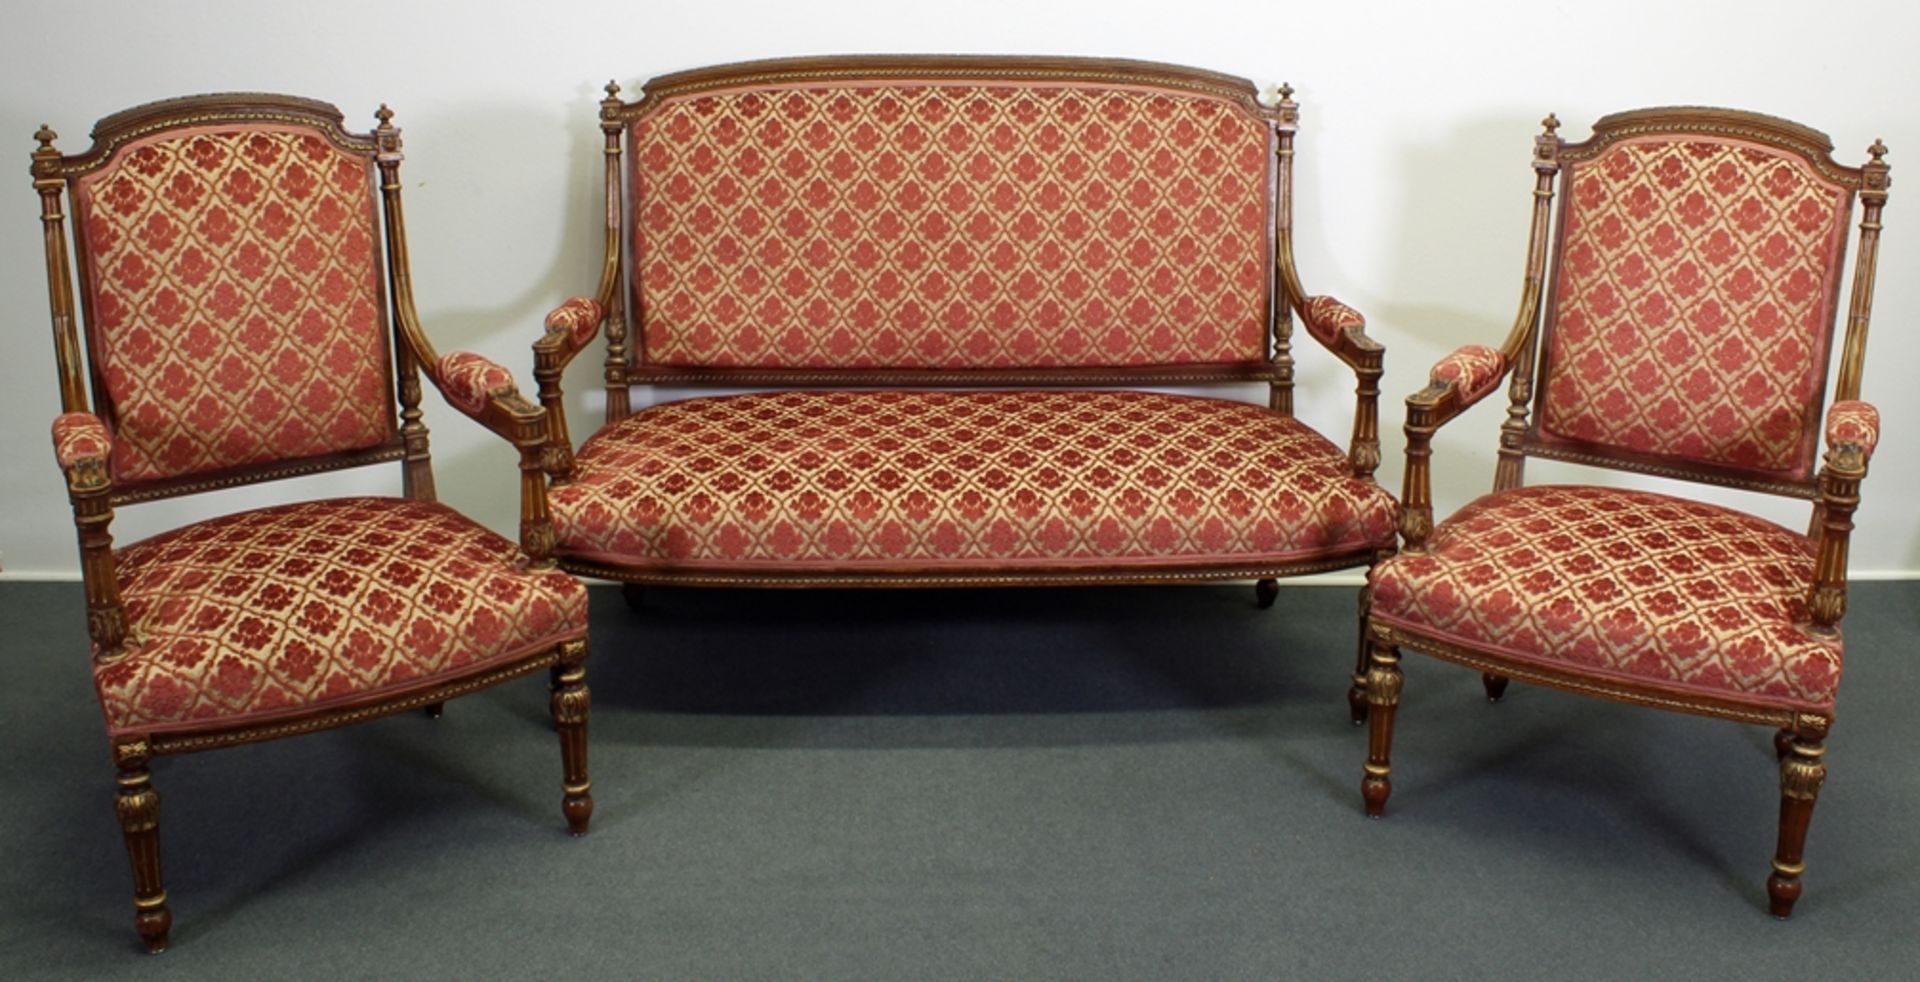 Sitzbank mit zwei Armstühlen, wohl 19. Jh., Louis Seize-Stil, Nussholz, teils goldfarbig appliziert